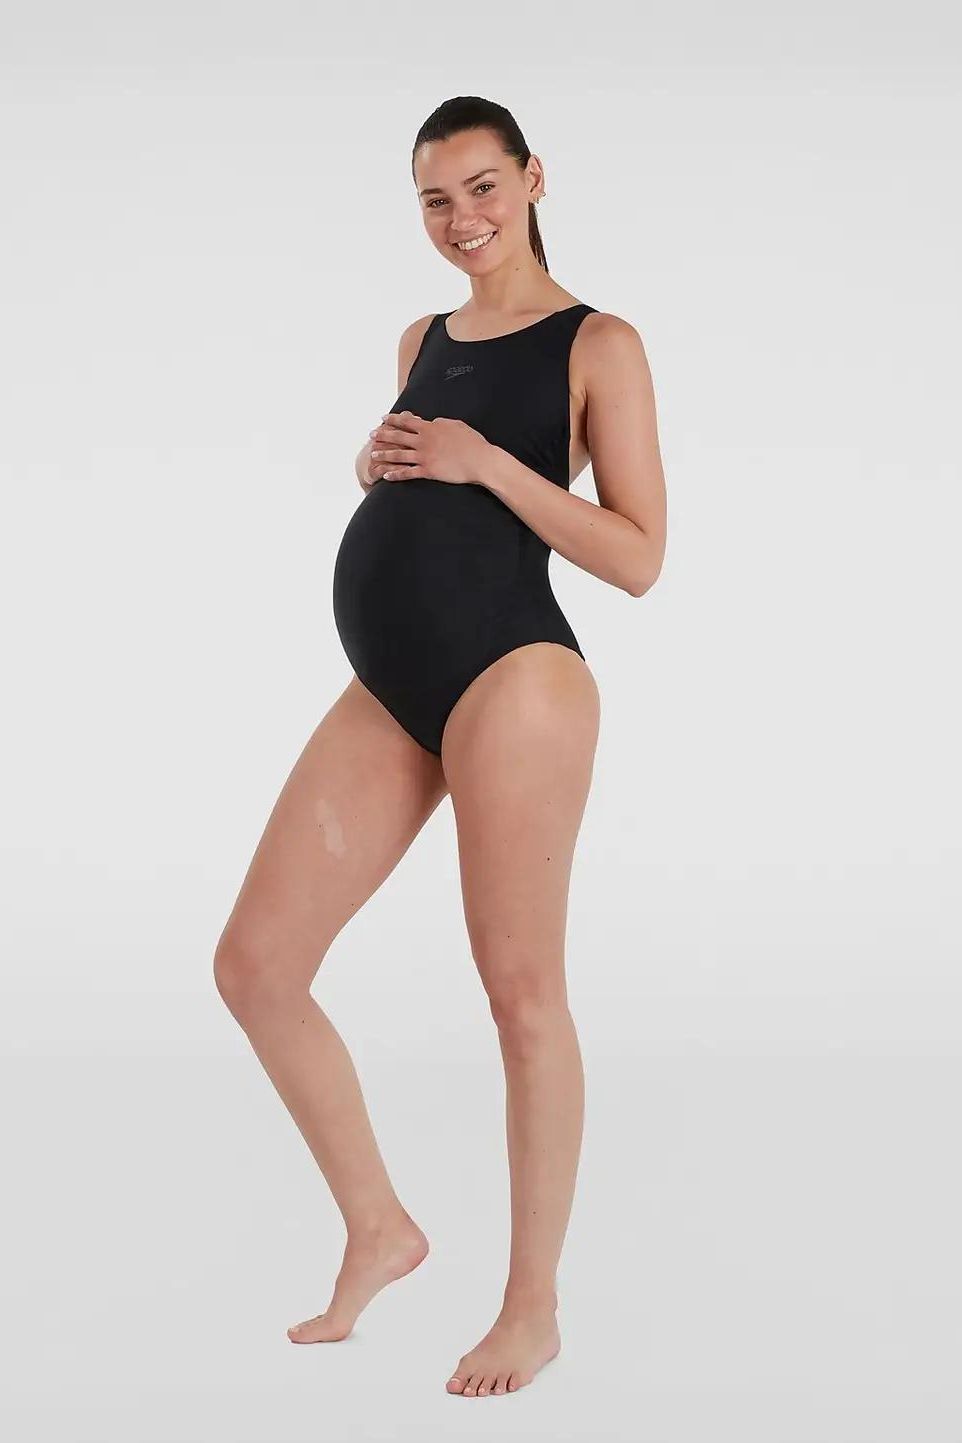 Women's Maternity Swimsuit Black: Best maternity swimwear